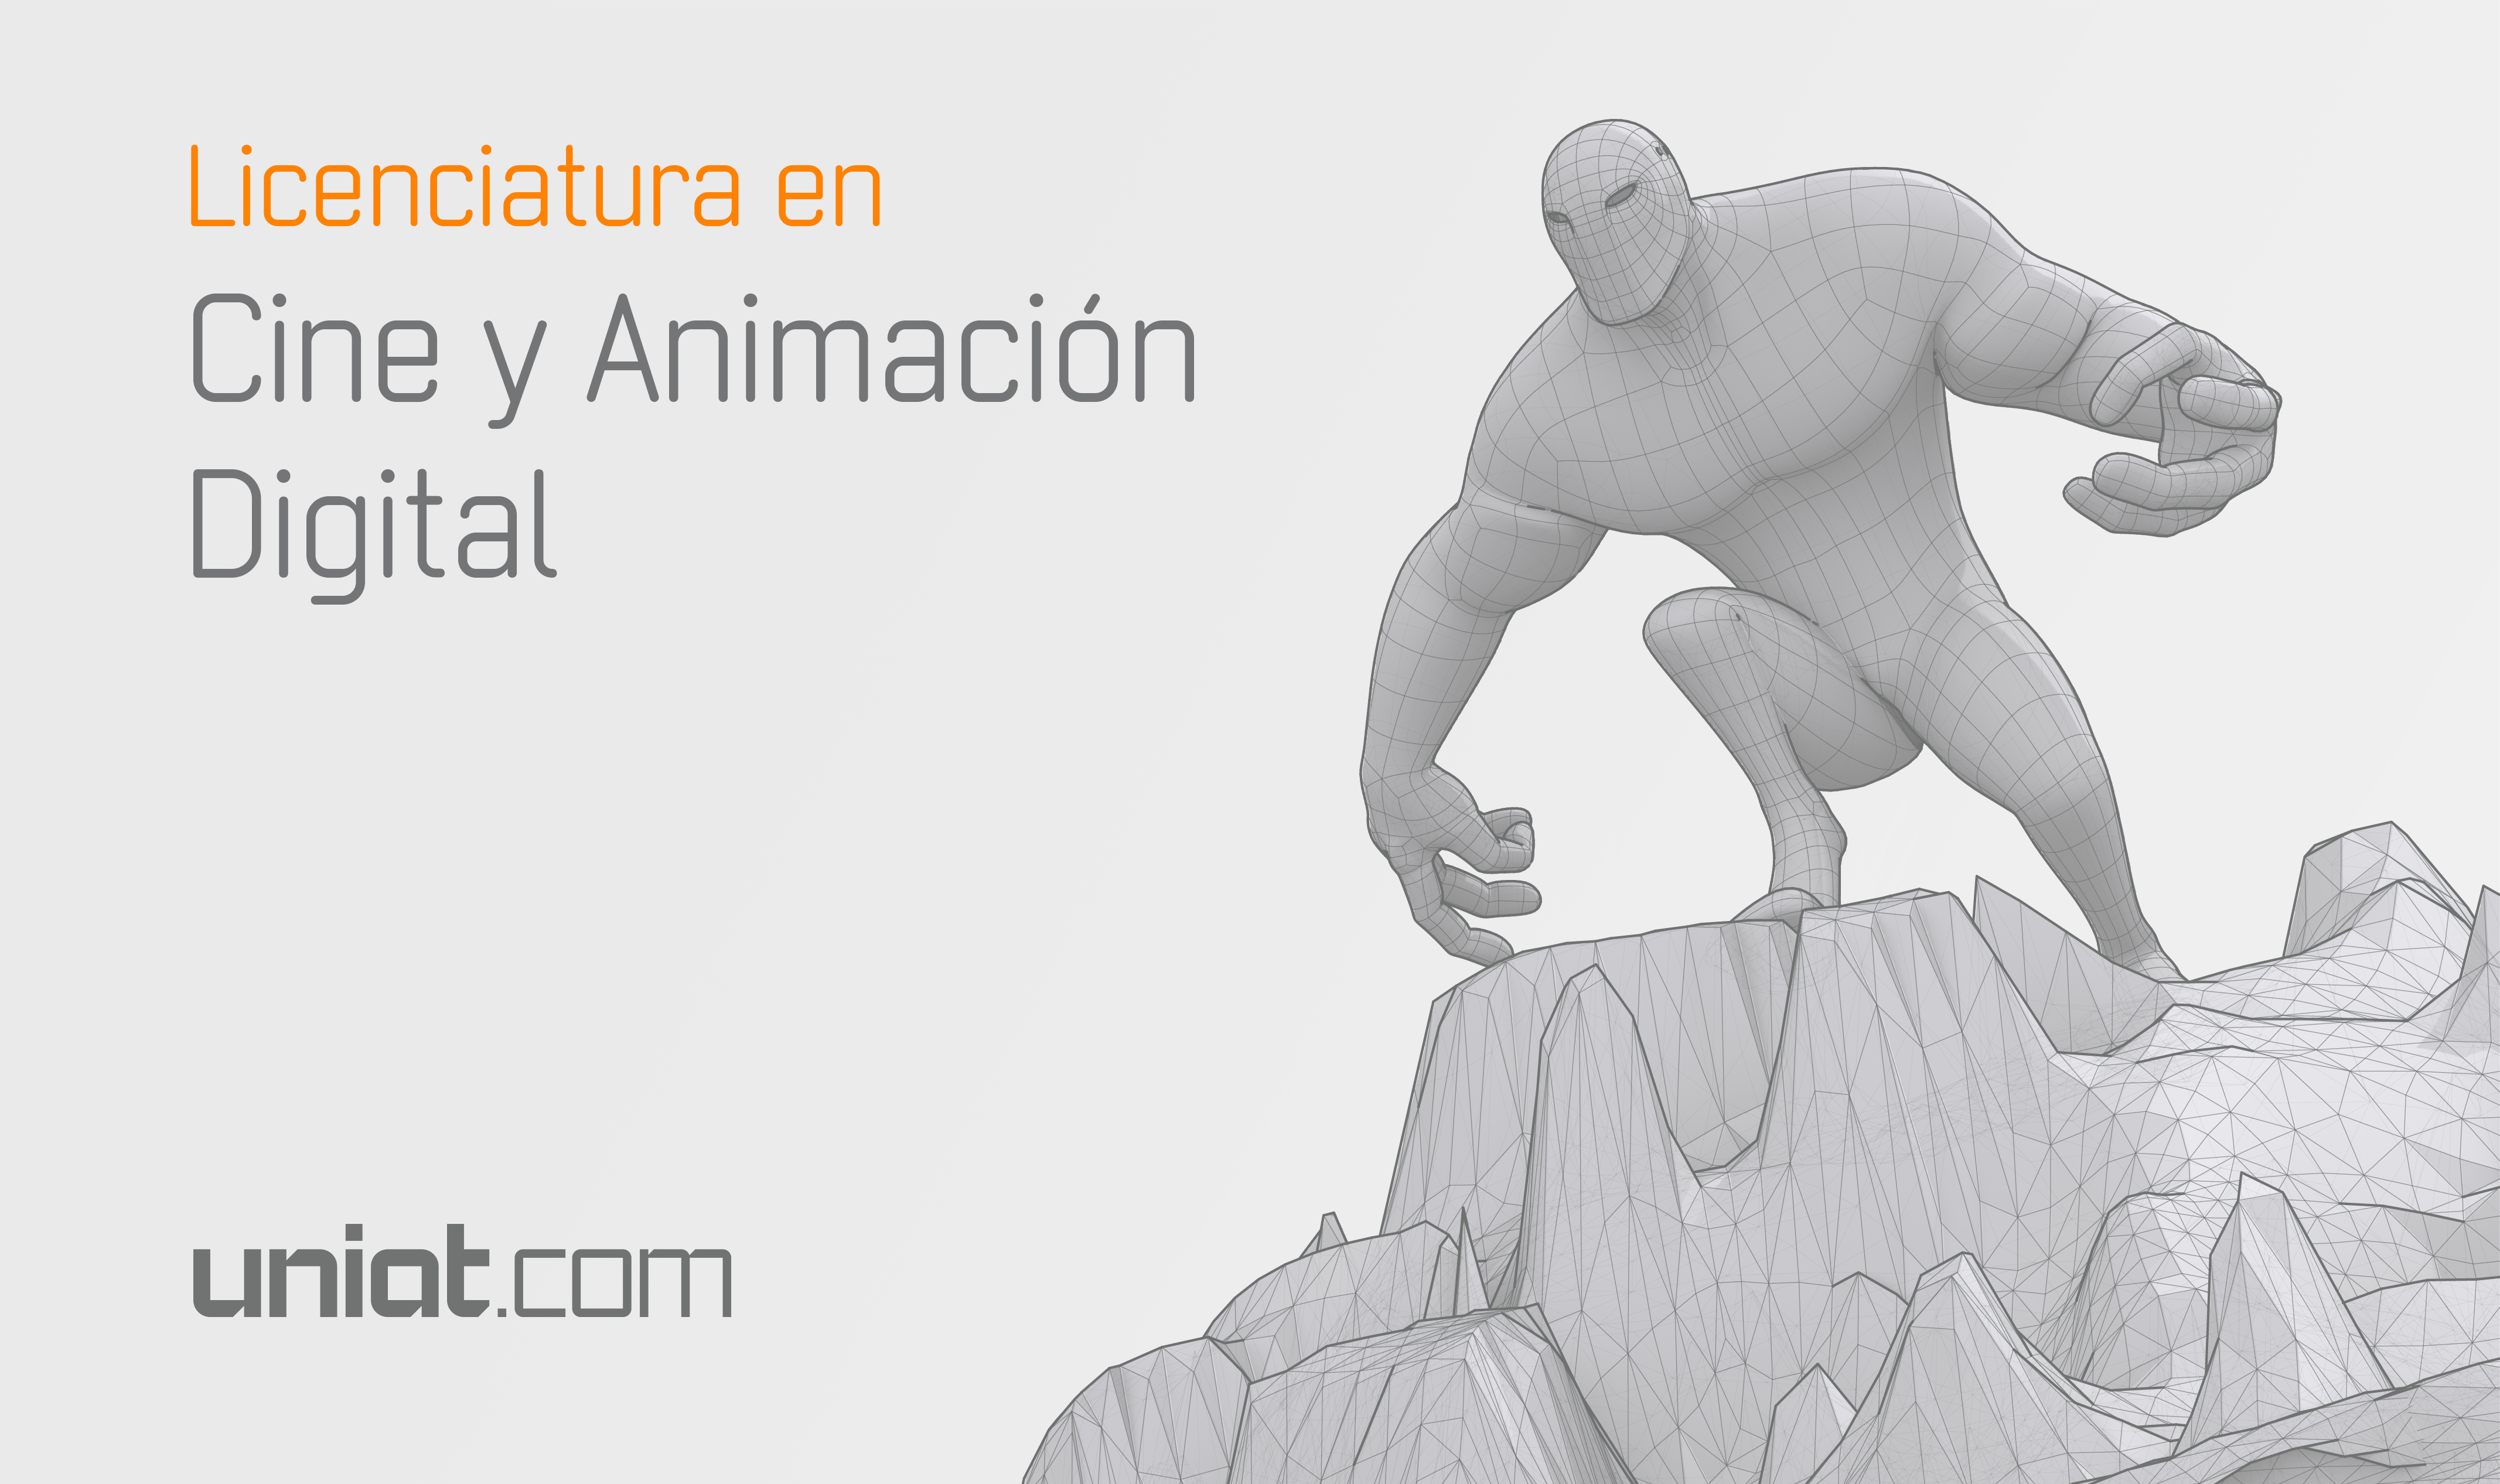 Inscripciones abiertas – Lic. en Cine y Animación Digital